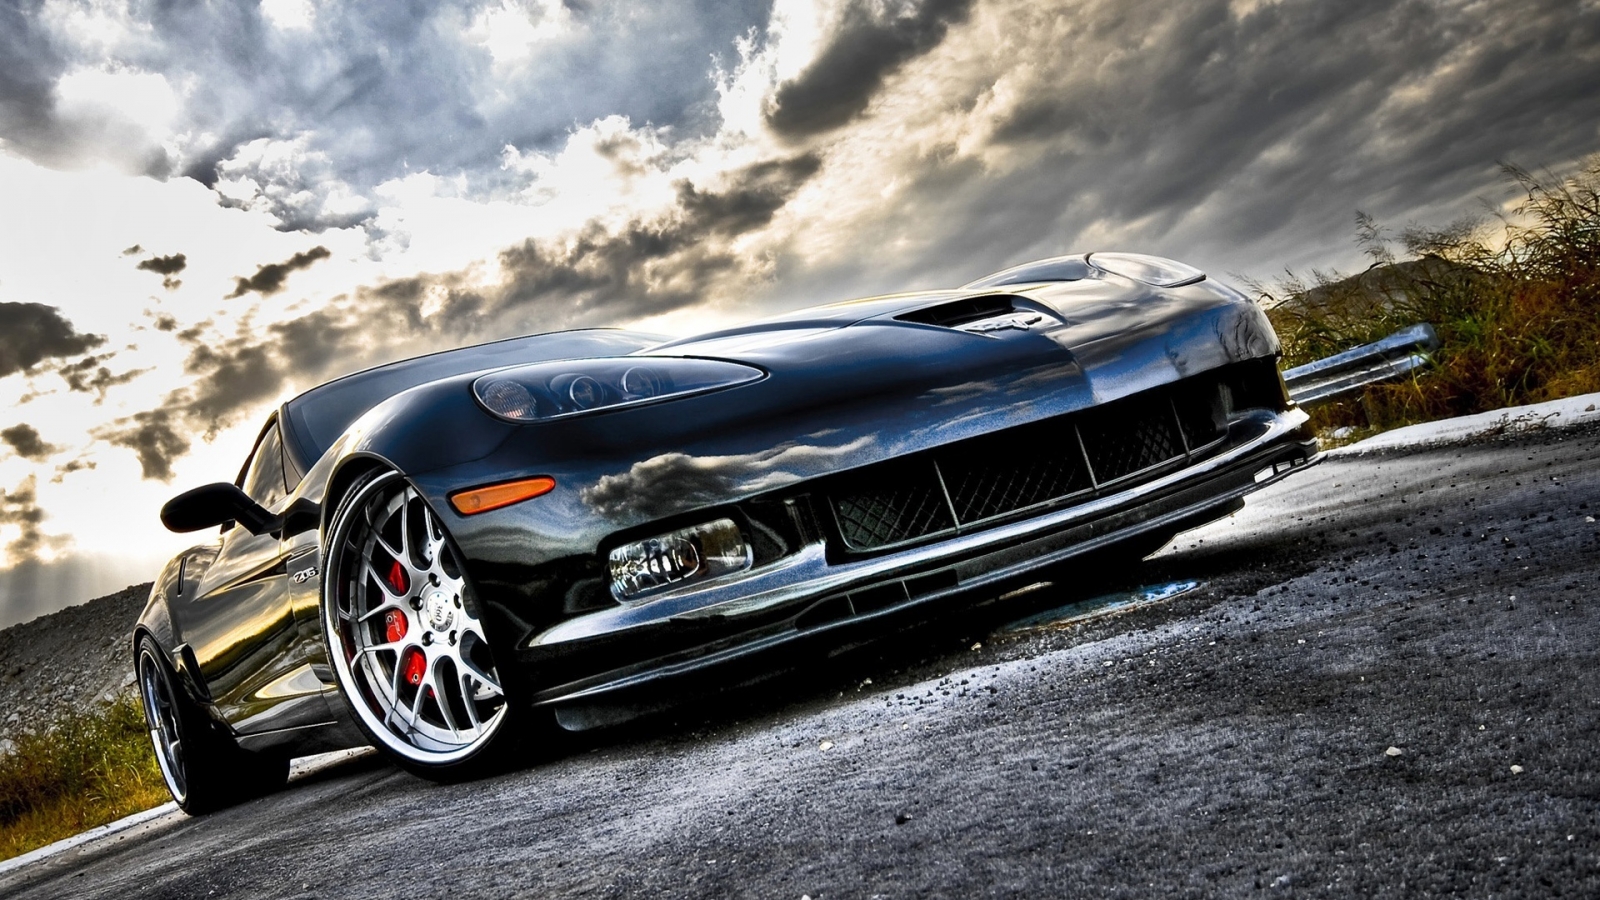 Corvette Super Sport Front Angle for 1600 x 900 HDTV resolution